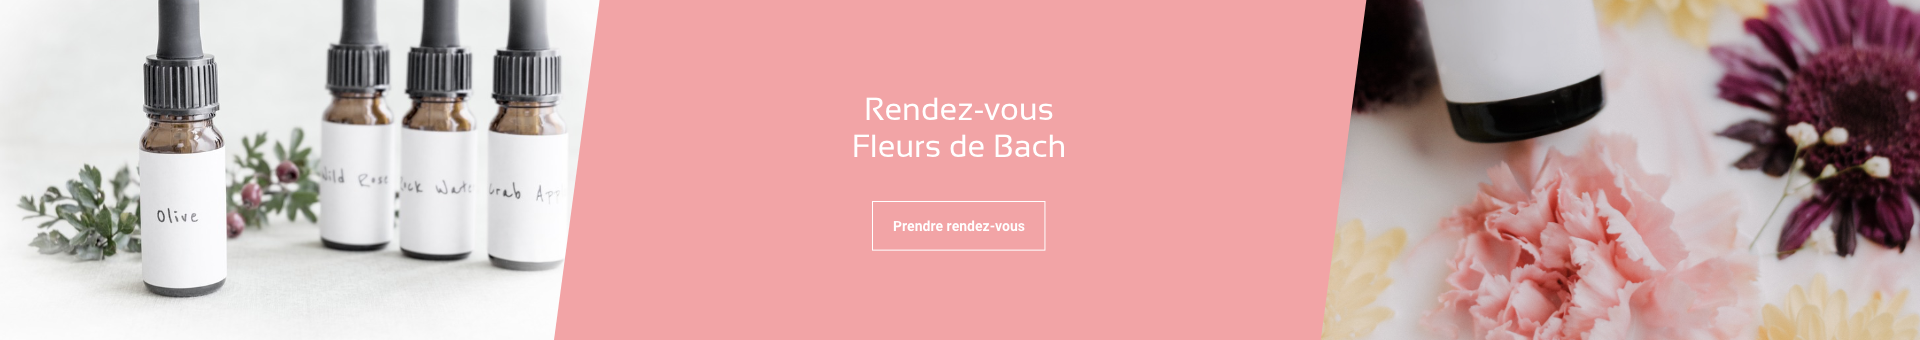 Quartes flacons de fleurs de Bach et mise en avant des rendez-vous d'informations